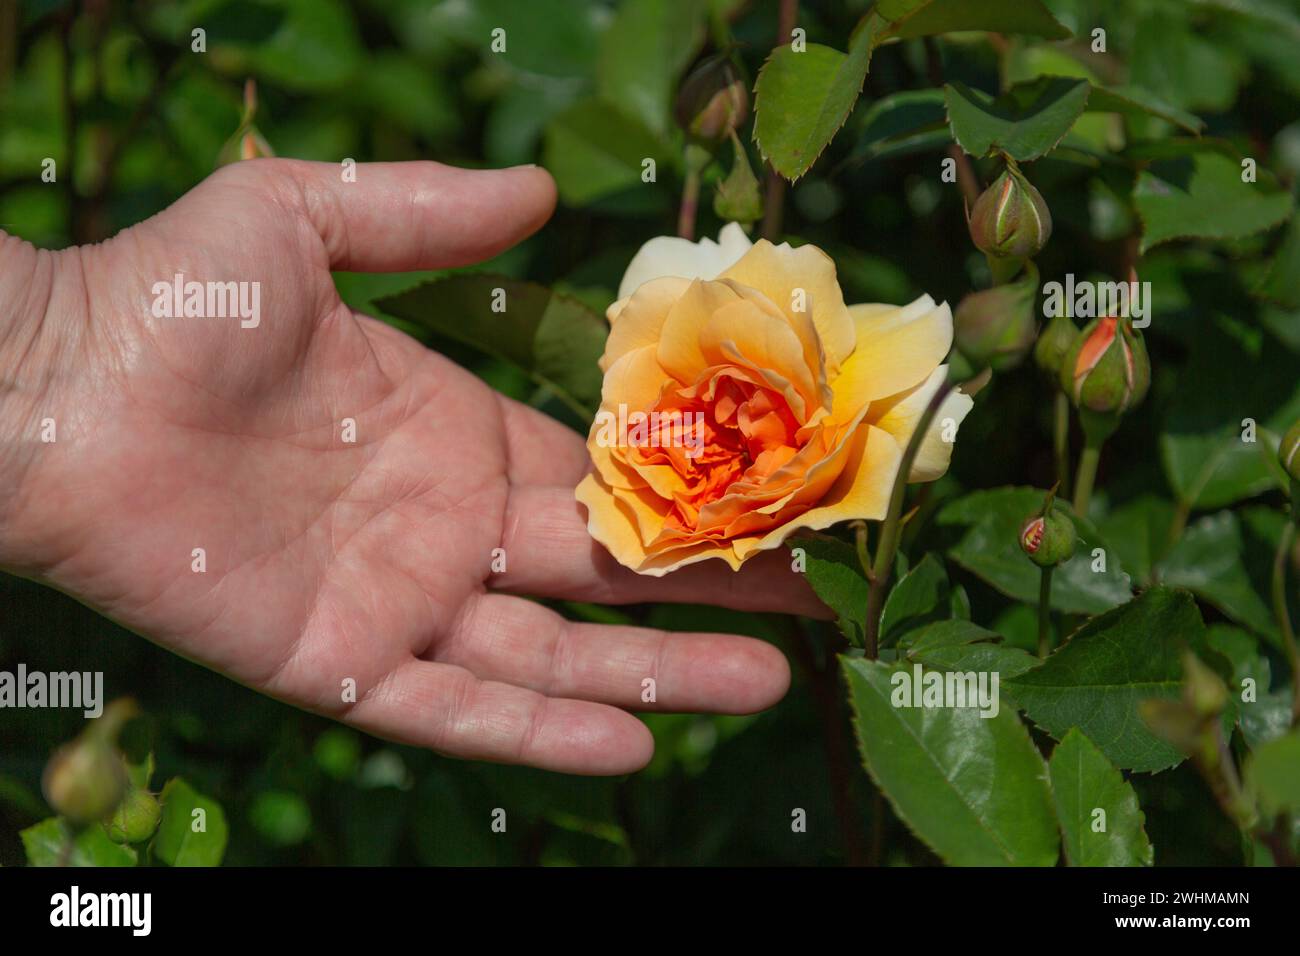 Eine weibliche Hand, die eine Rose in voller Blüte in Aprikose und Orange mit Knospen und grünen Blättern in teilweise verschwommenem Hintergrund hält Stockfoto